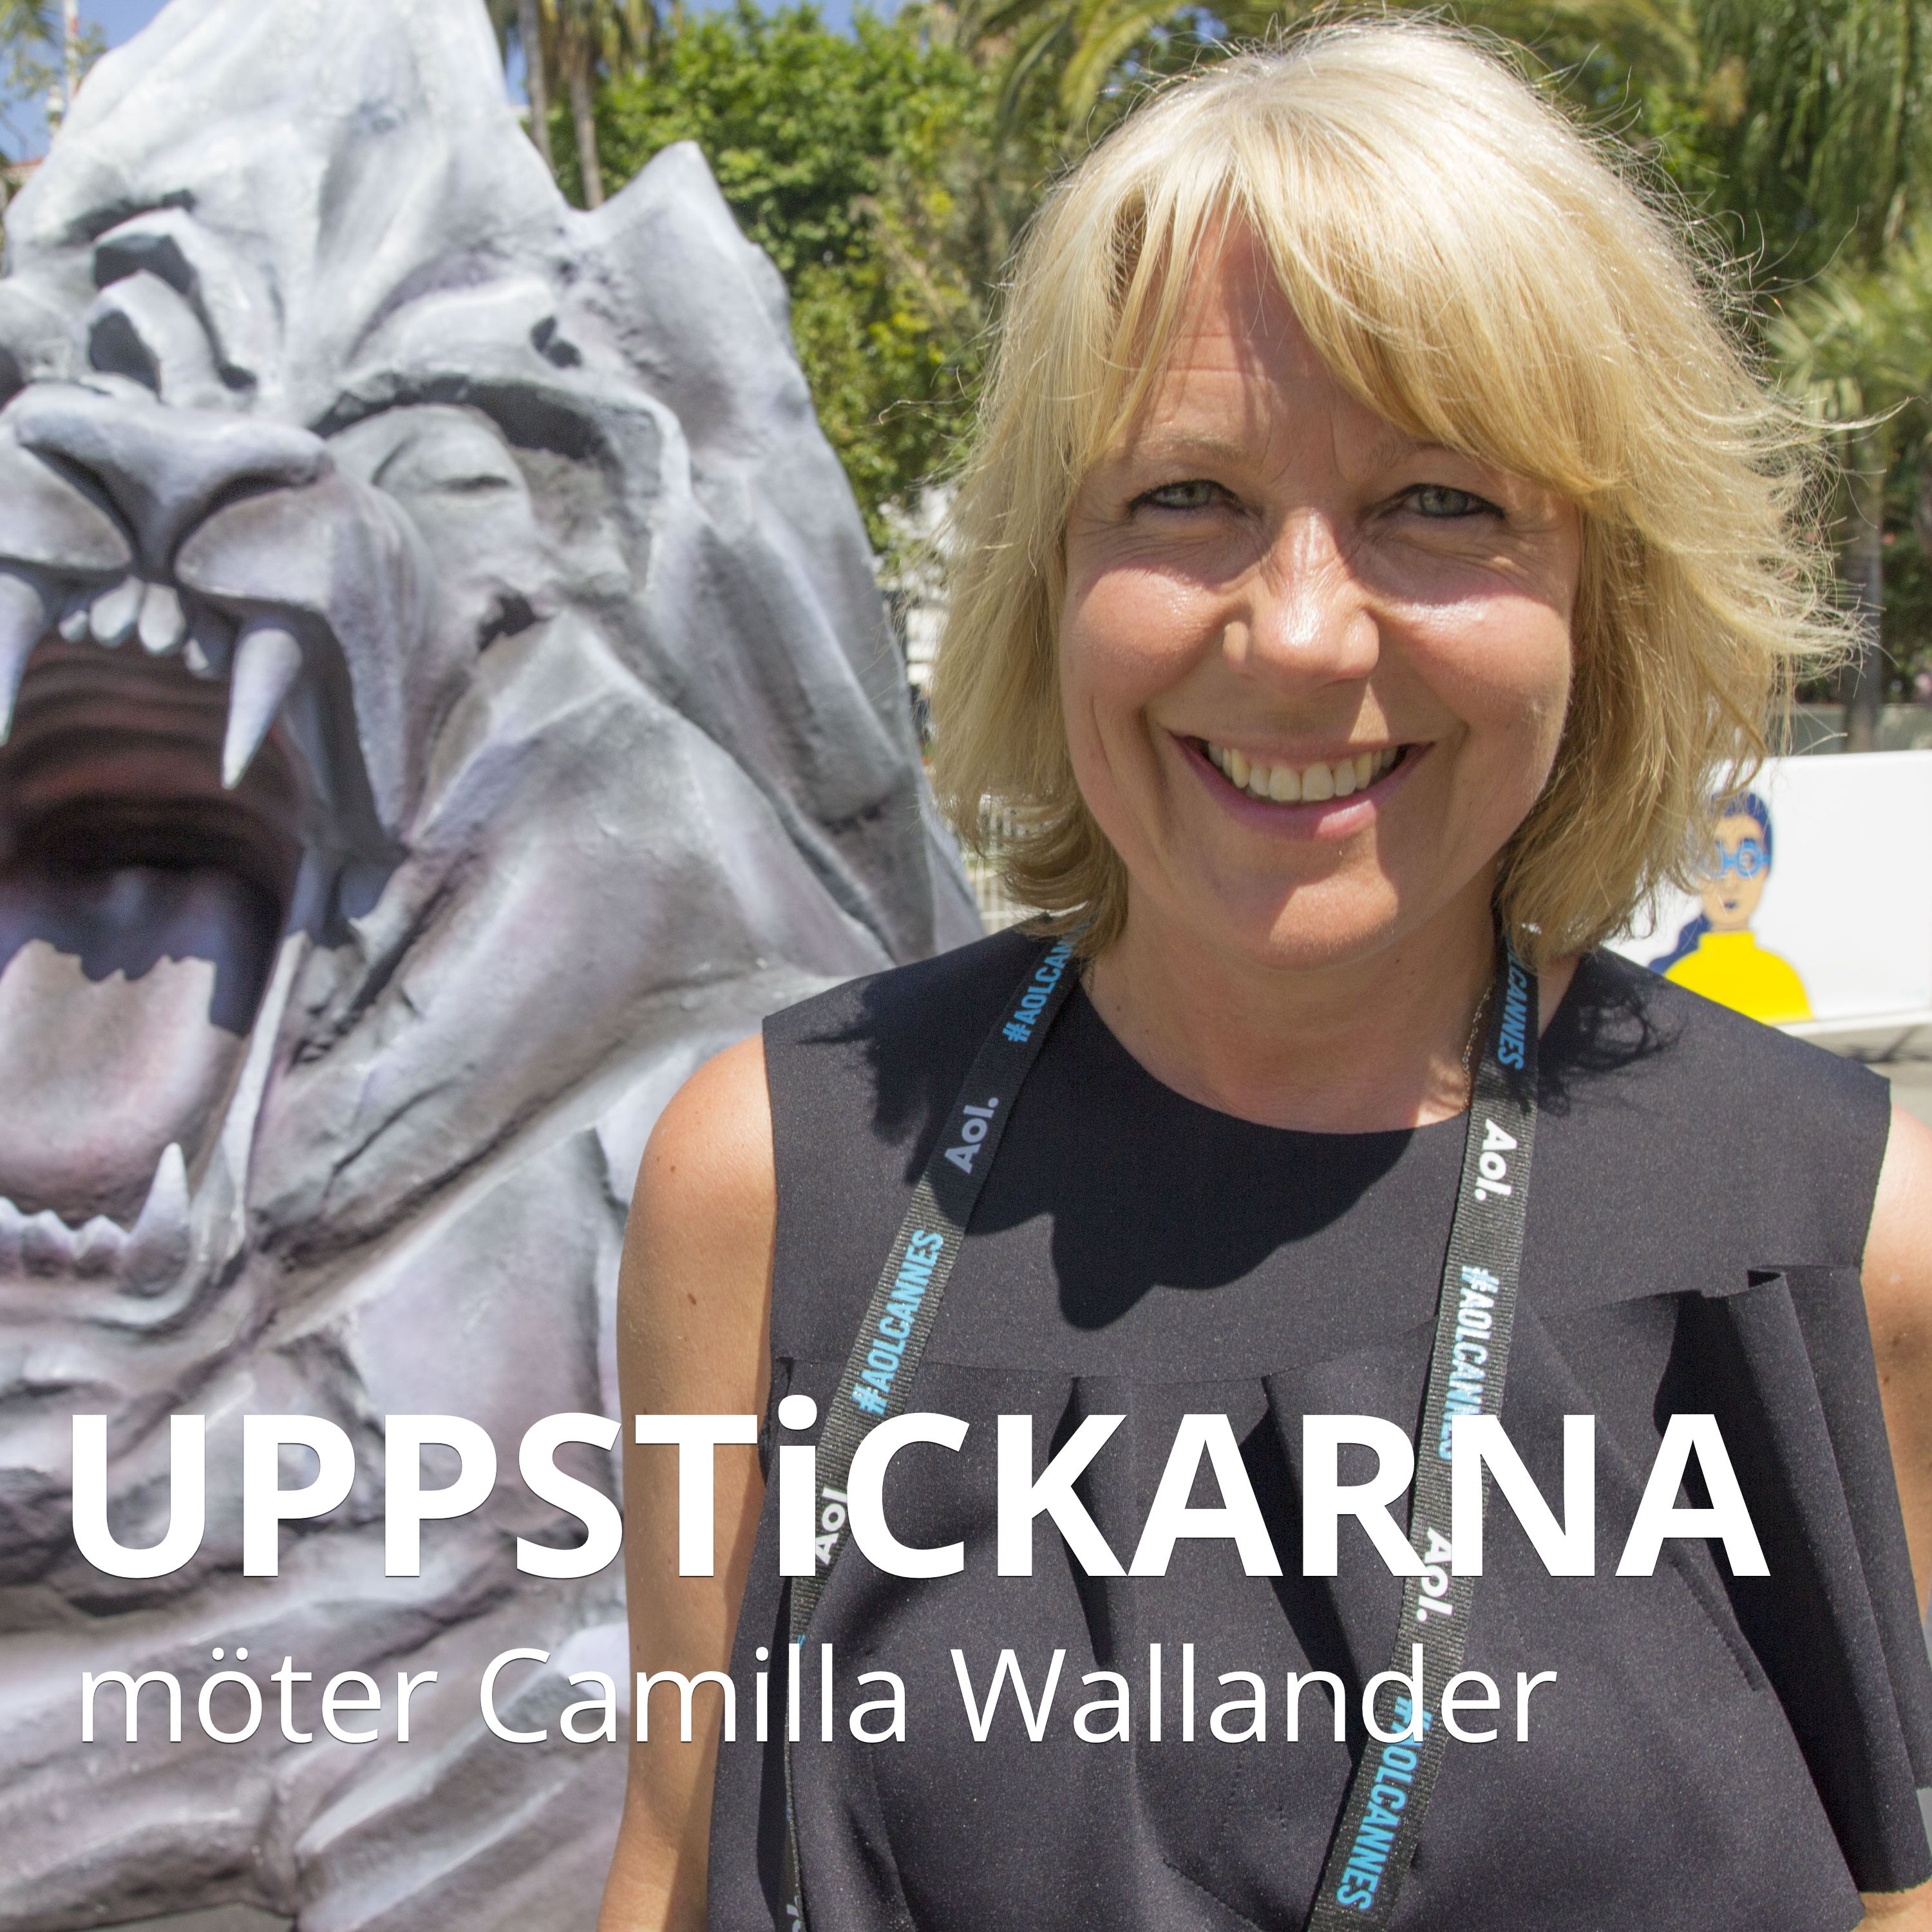 Uppstickarna möter Camilla Wallander